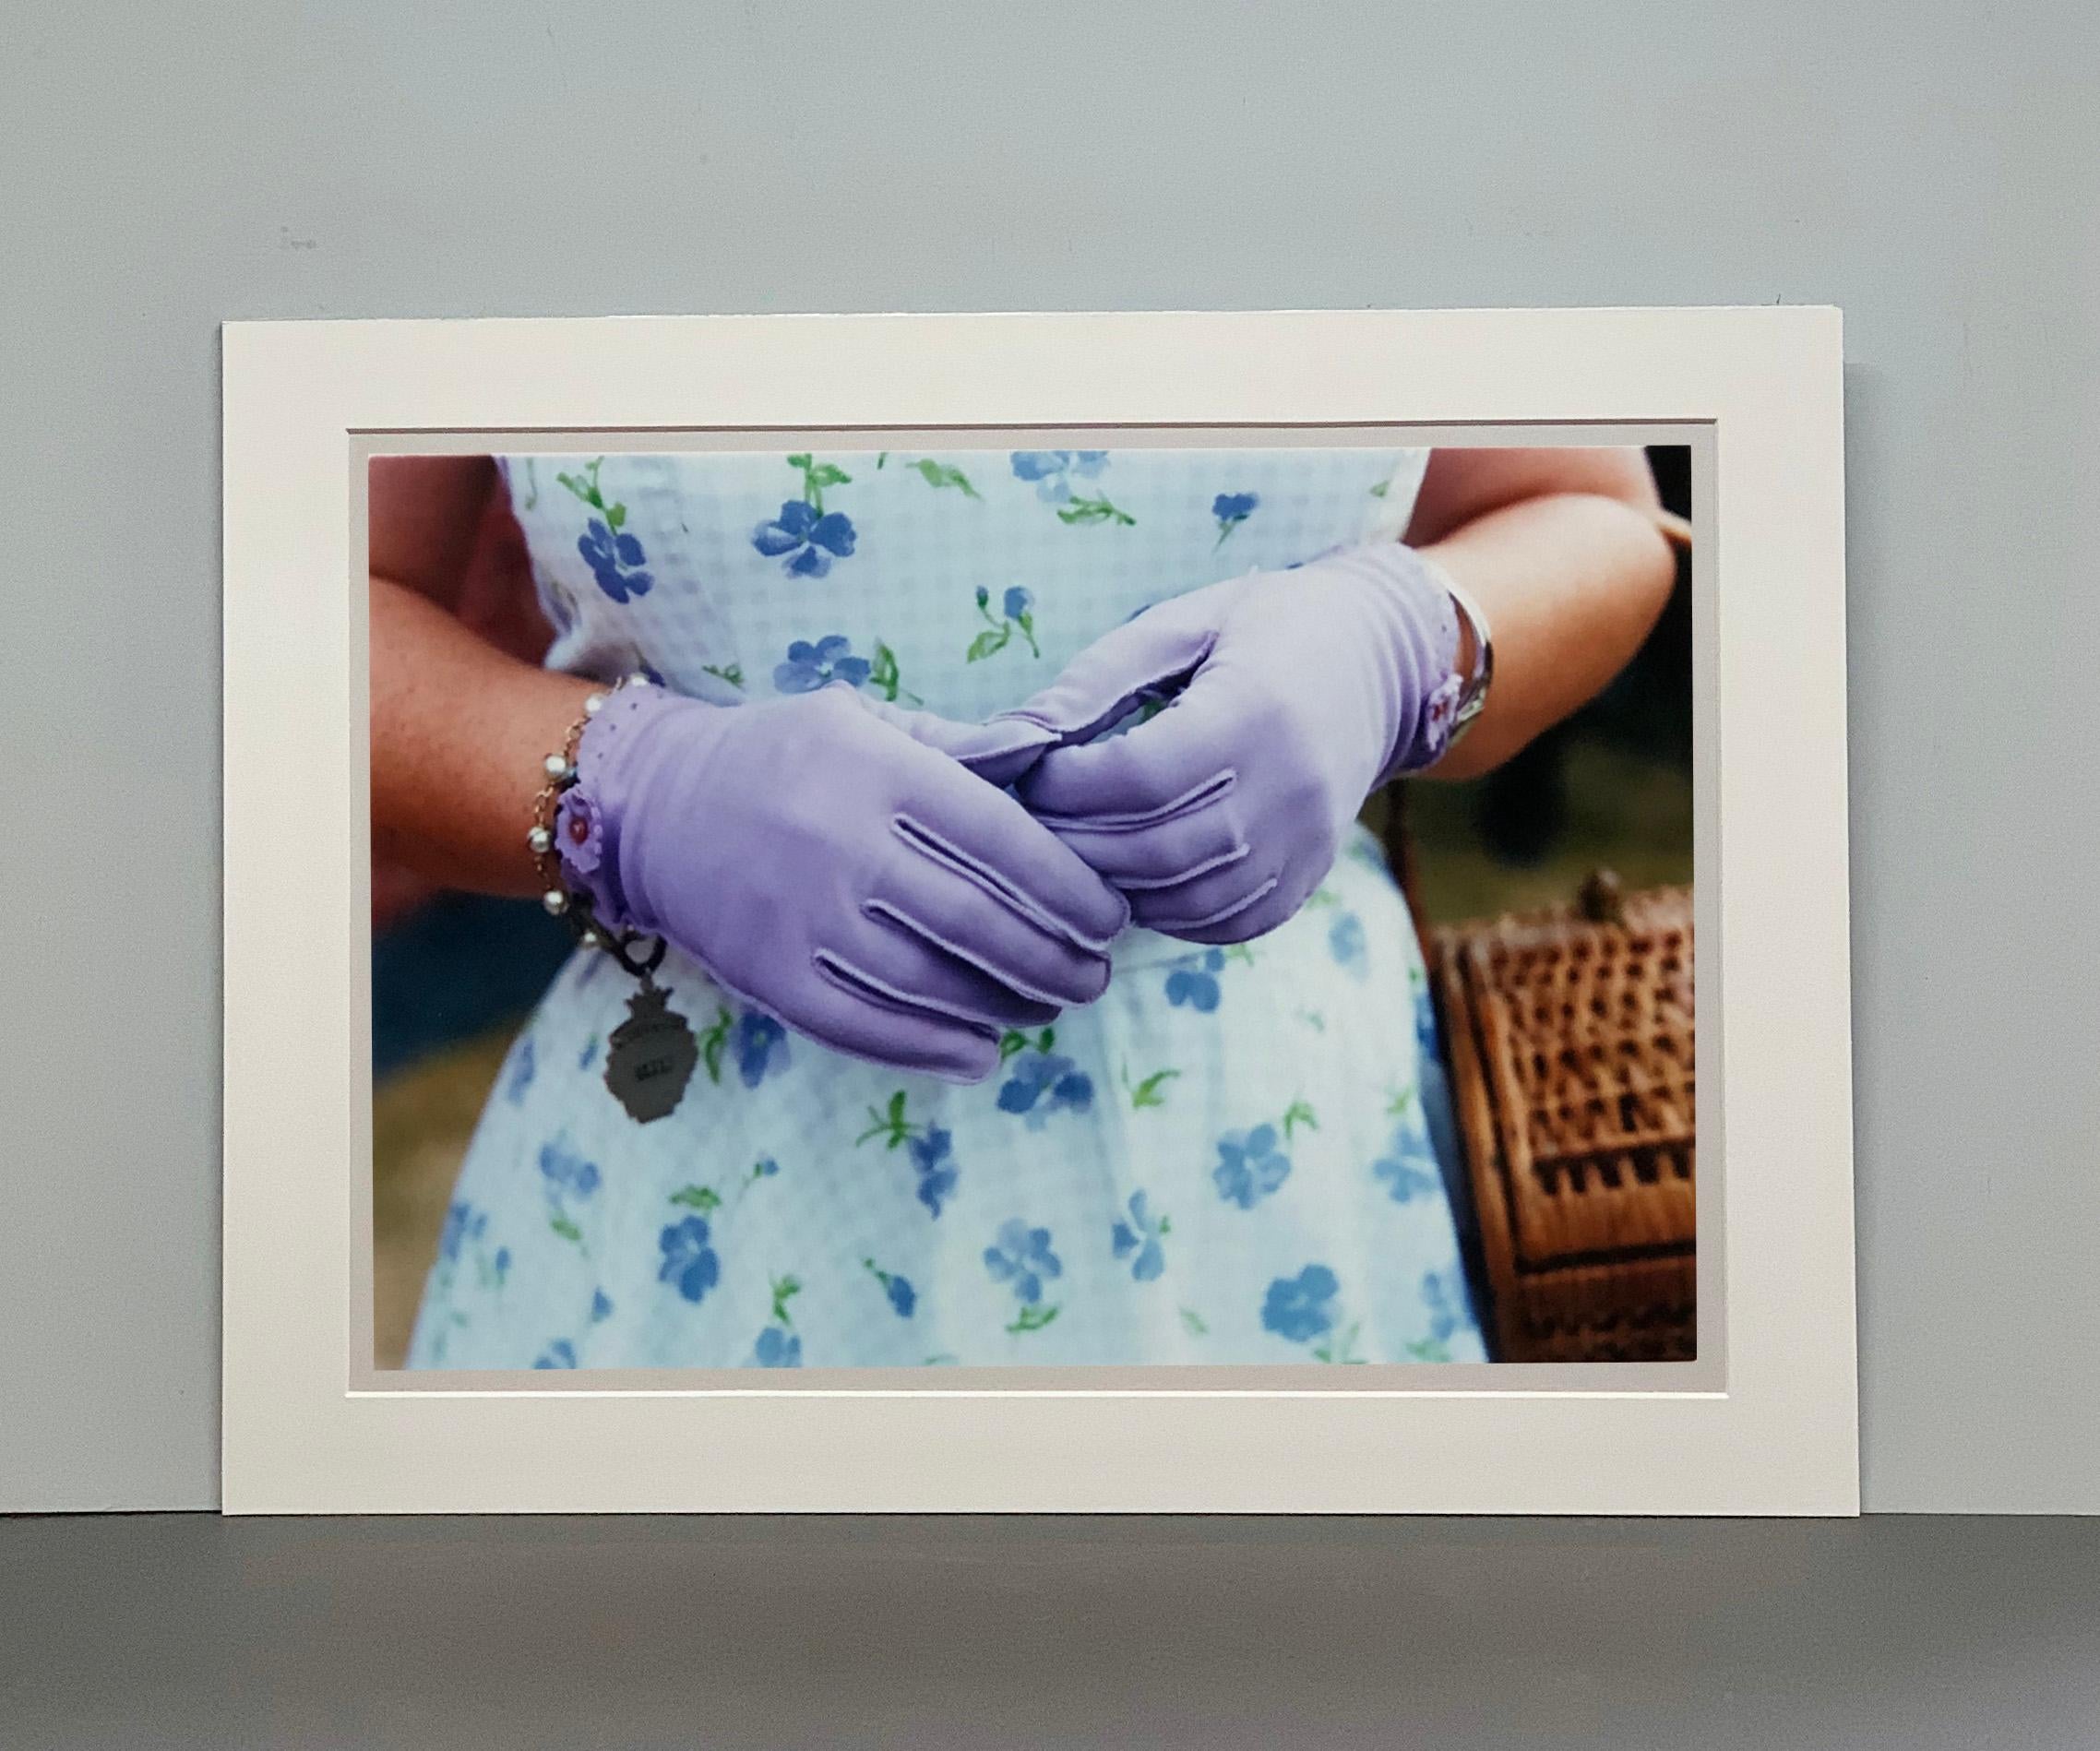 Fliederfarbene Handschuhe, Goodwood, Chichester - Feminine Mode, Farbfotografie (Grau), Figurative Photograph, von Richard Heeps